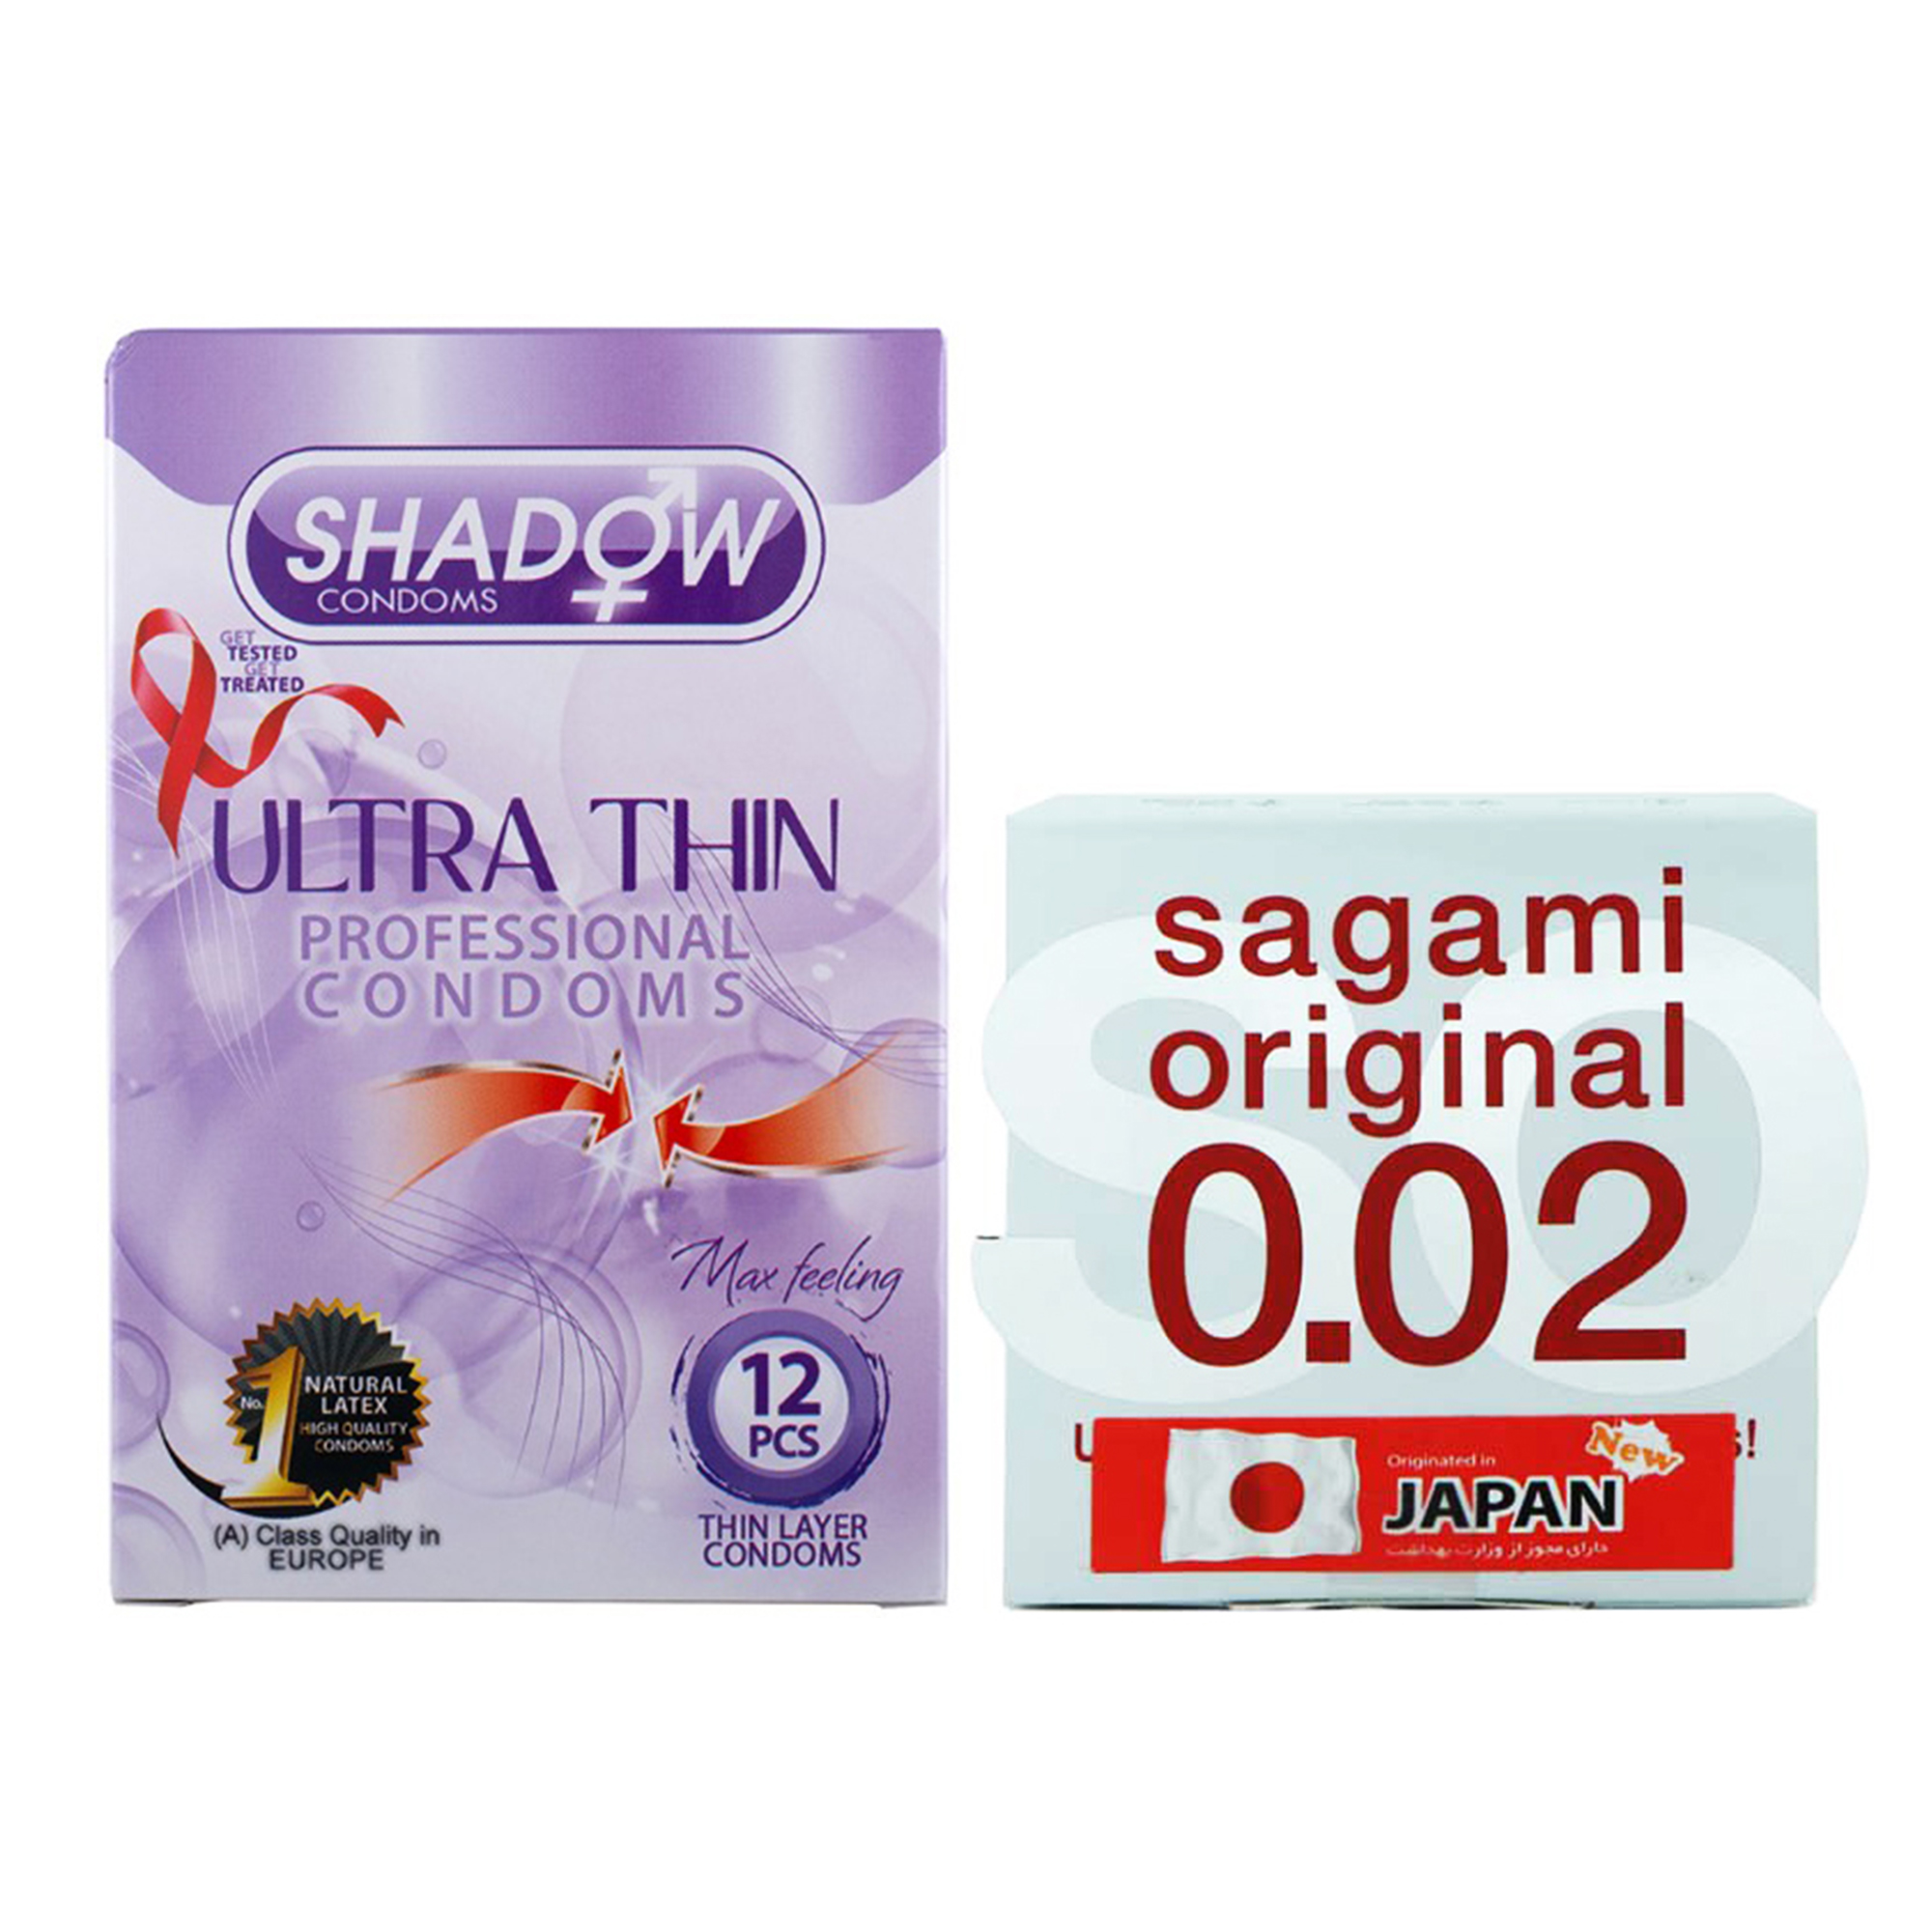 کاندوم ساگامی مدل Normal بسته یک عددی به همراه کاندوم شادو مدل Ultra Thin بسته 12 عددی